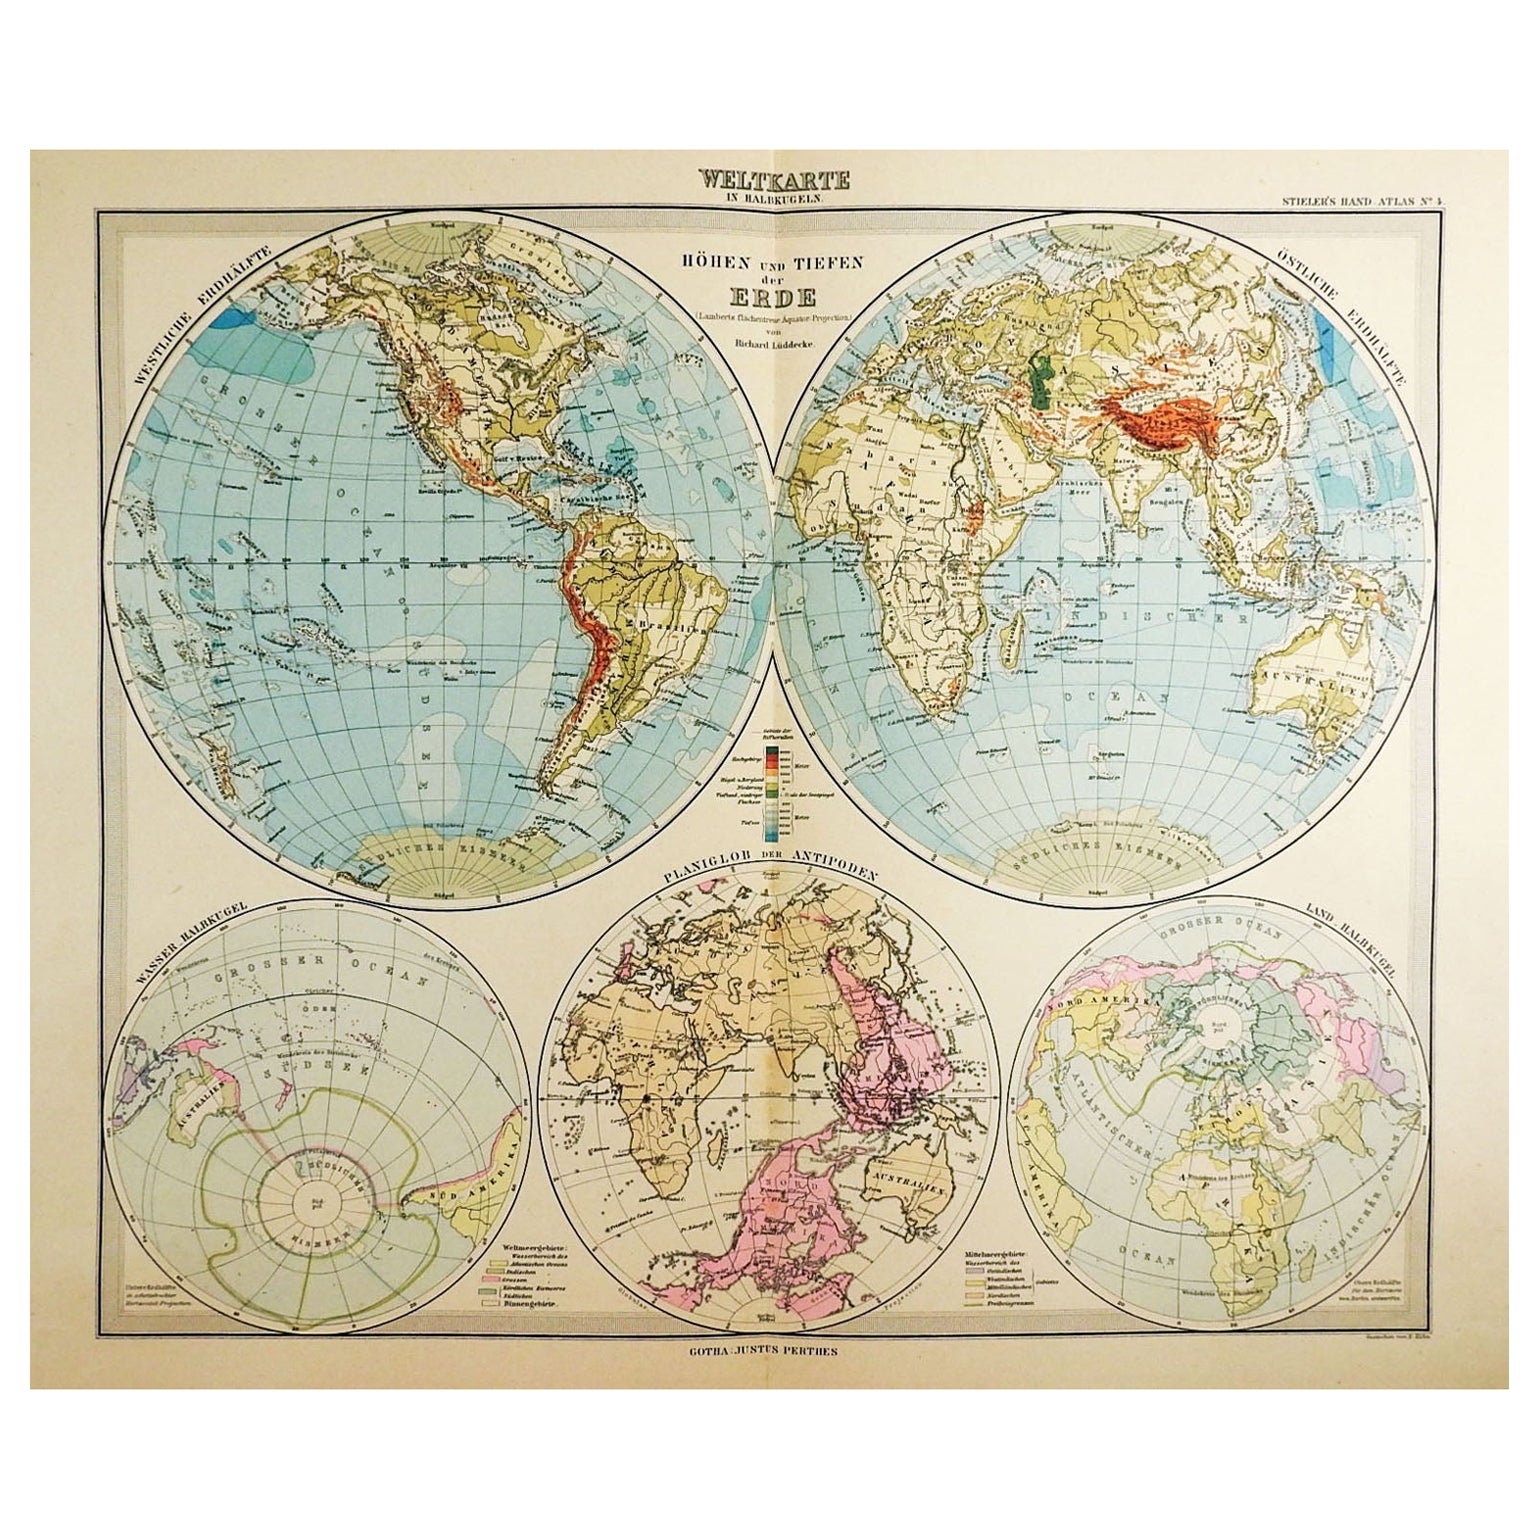 Cartes Atlas 100 Stielers Hand des années 1900